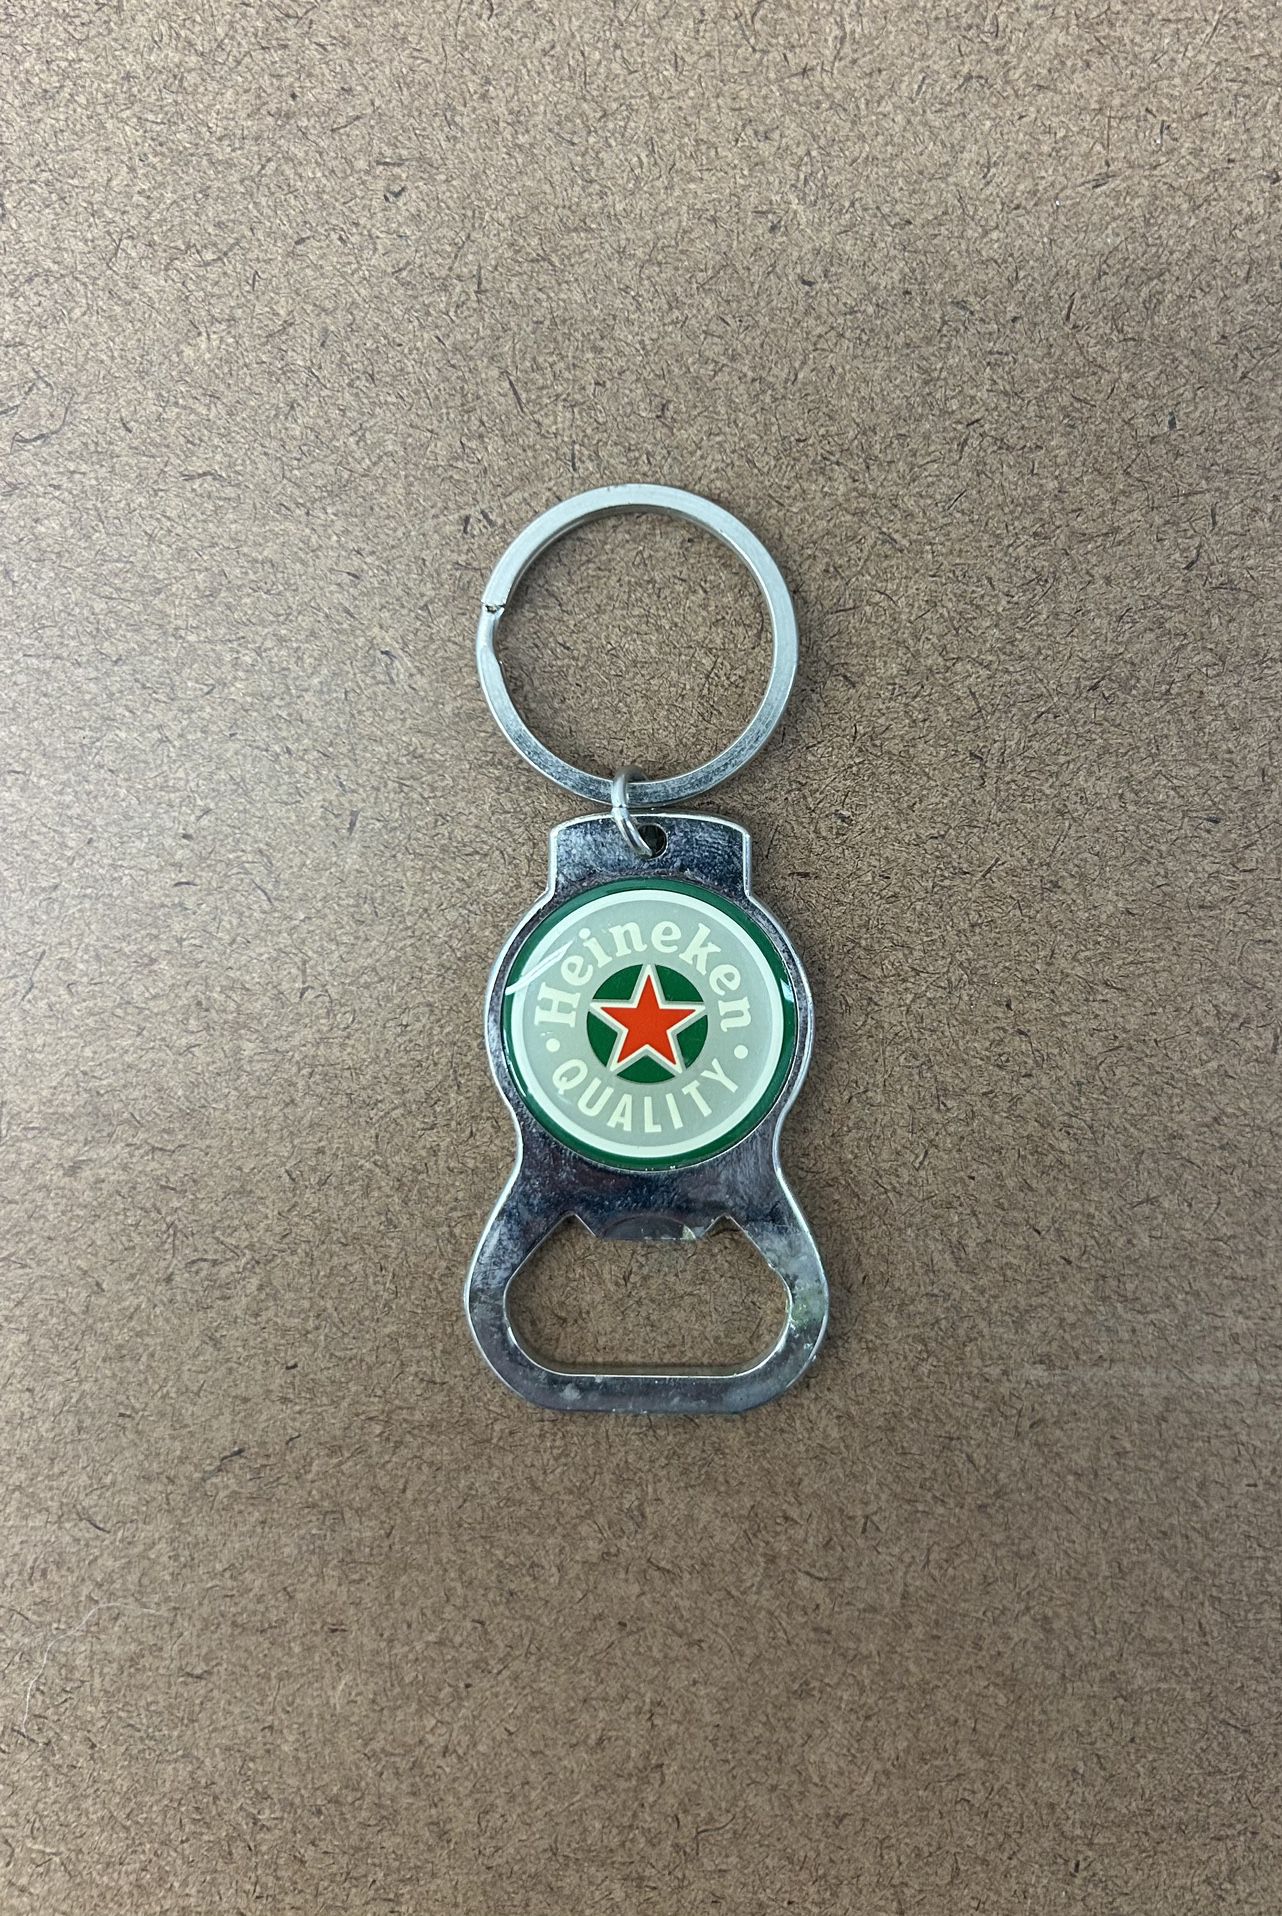 Vintage HEINEKEN “Heineken Quality” Bottle Opener/Keychain(pre-owned)